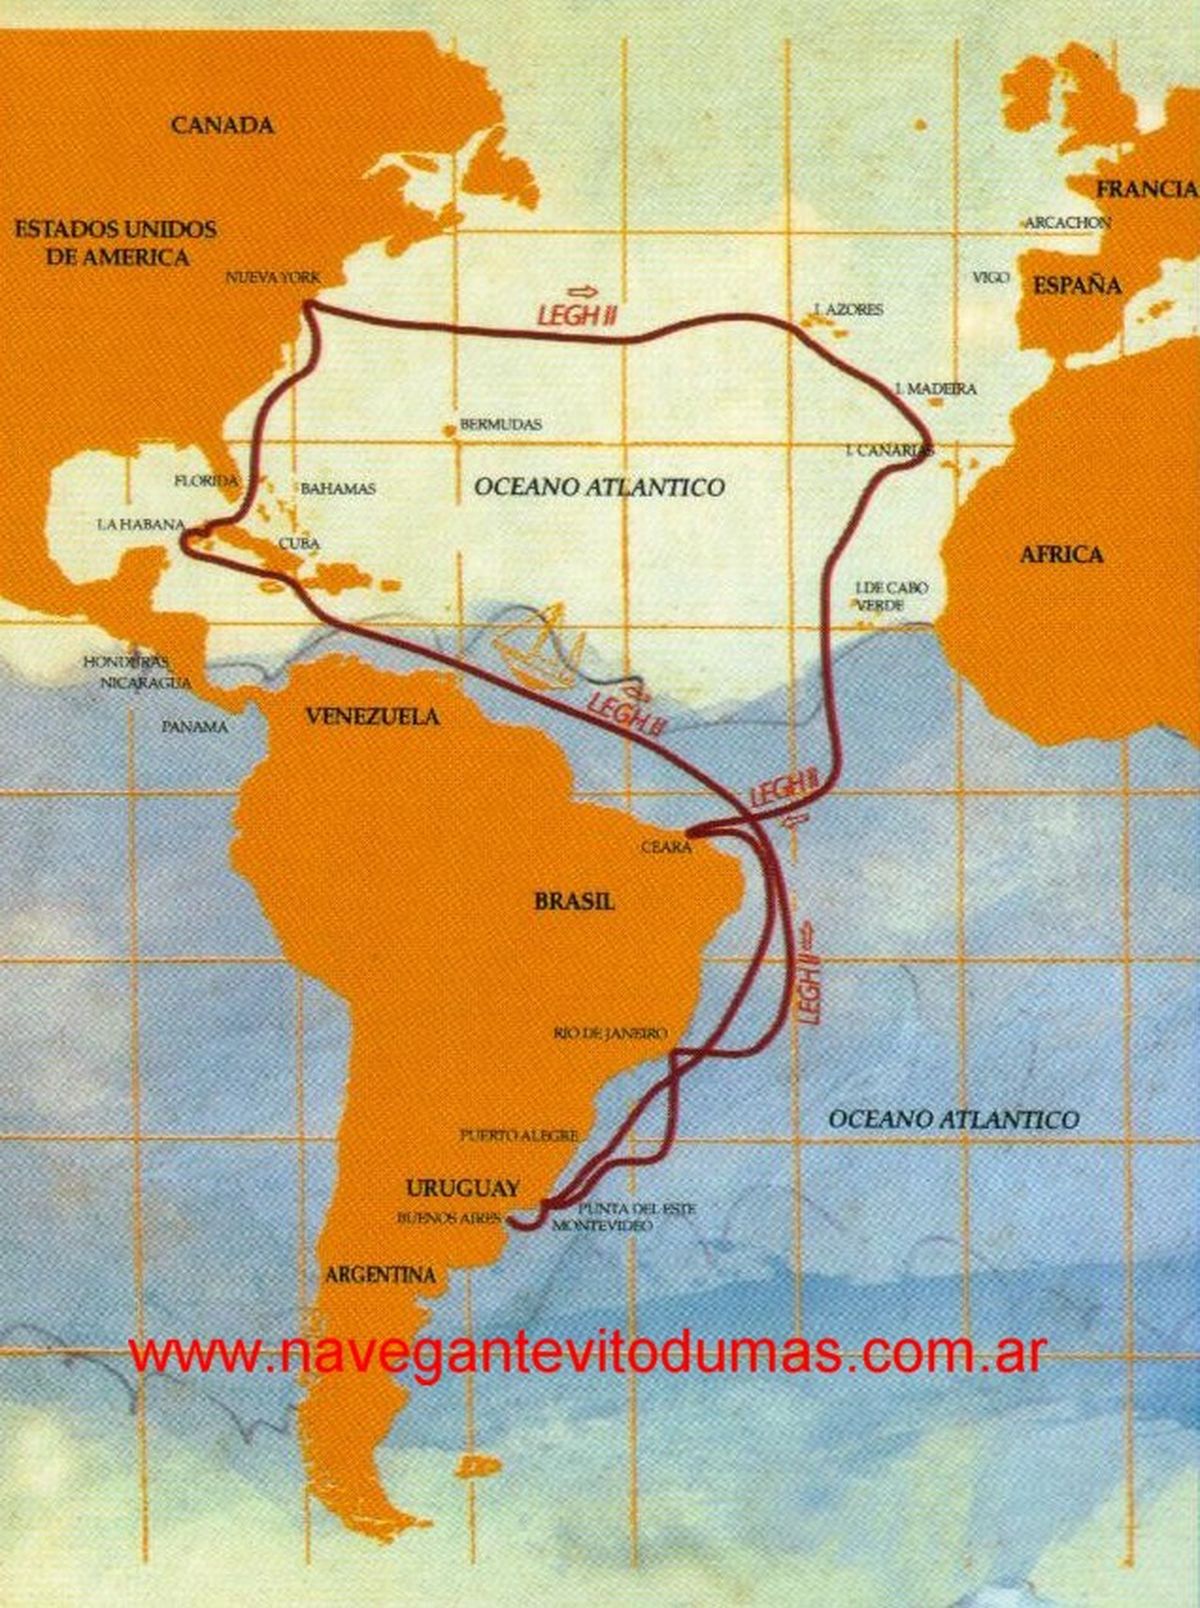 Entre 1945 y 1946 y, en otra inolvidable travesía, Vito Dumas concretó el doble cruce del océano Atlántico habiendo recorrido 17.045 millas (casi 31.600 kilómetros) en 234 días.